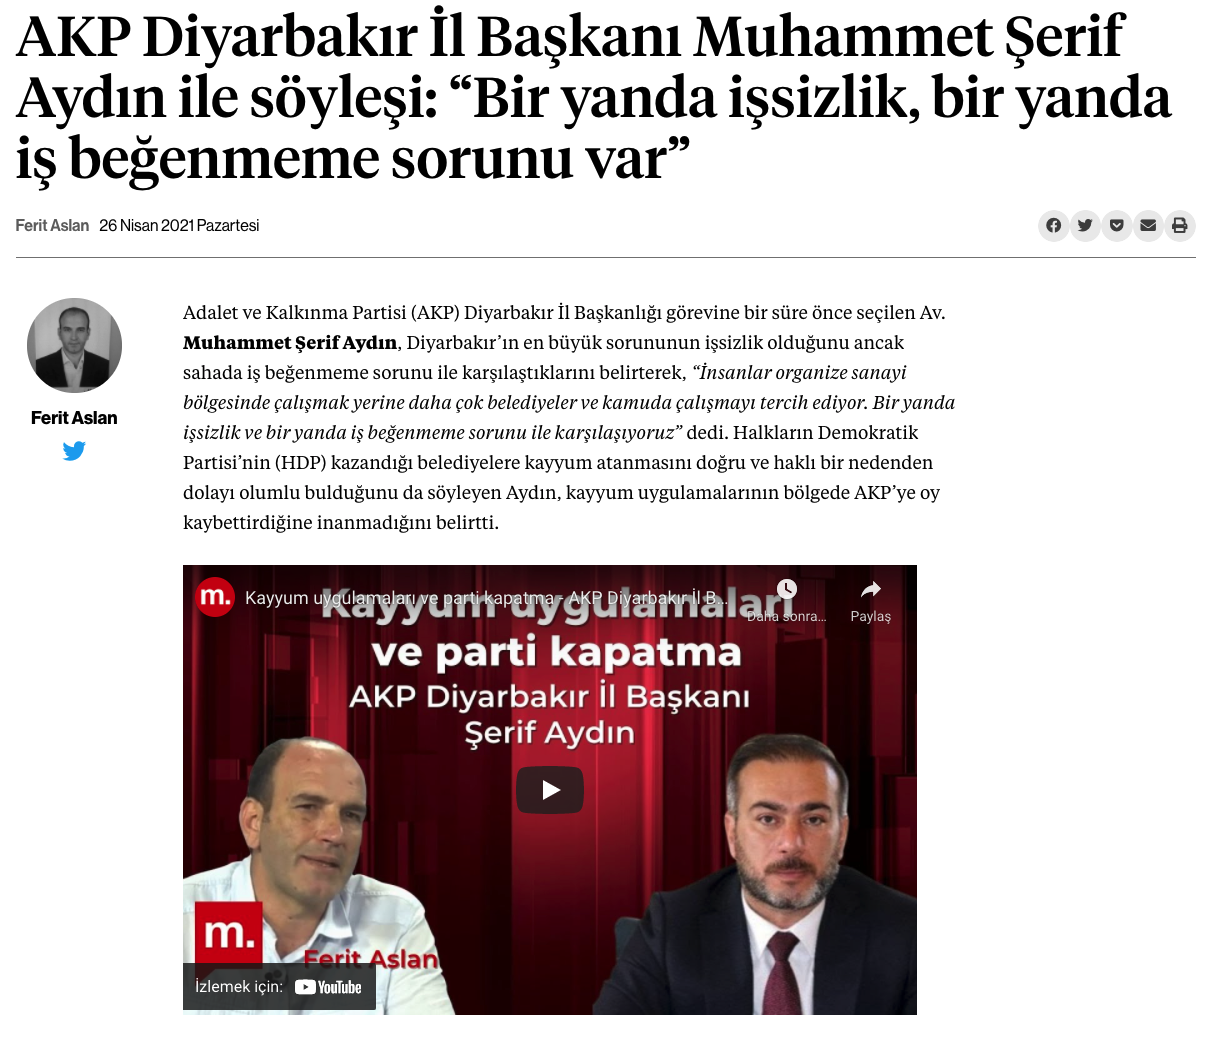 Haber sitesini ABD'den fon aldığı için eleştiren AKP'li, aynı siteye röportaj vermiş! - Resim : 3